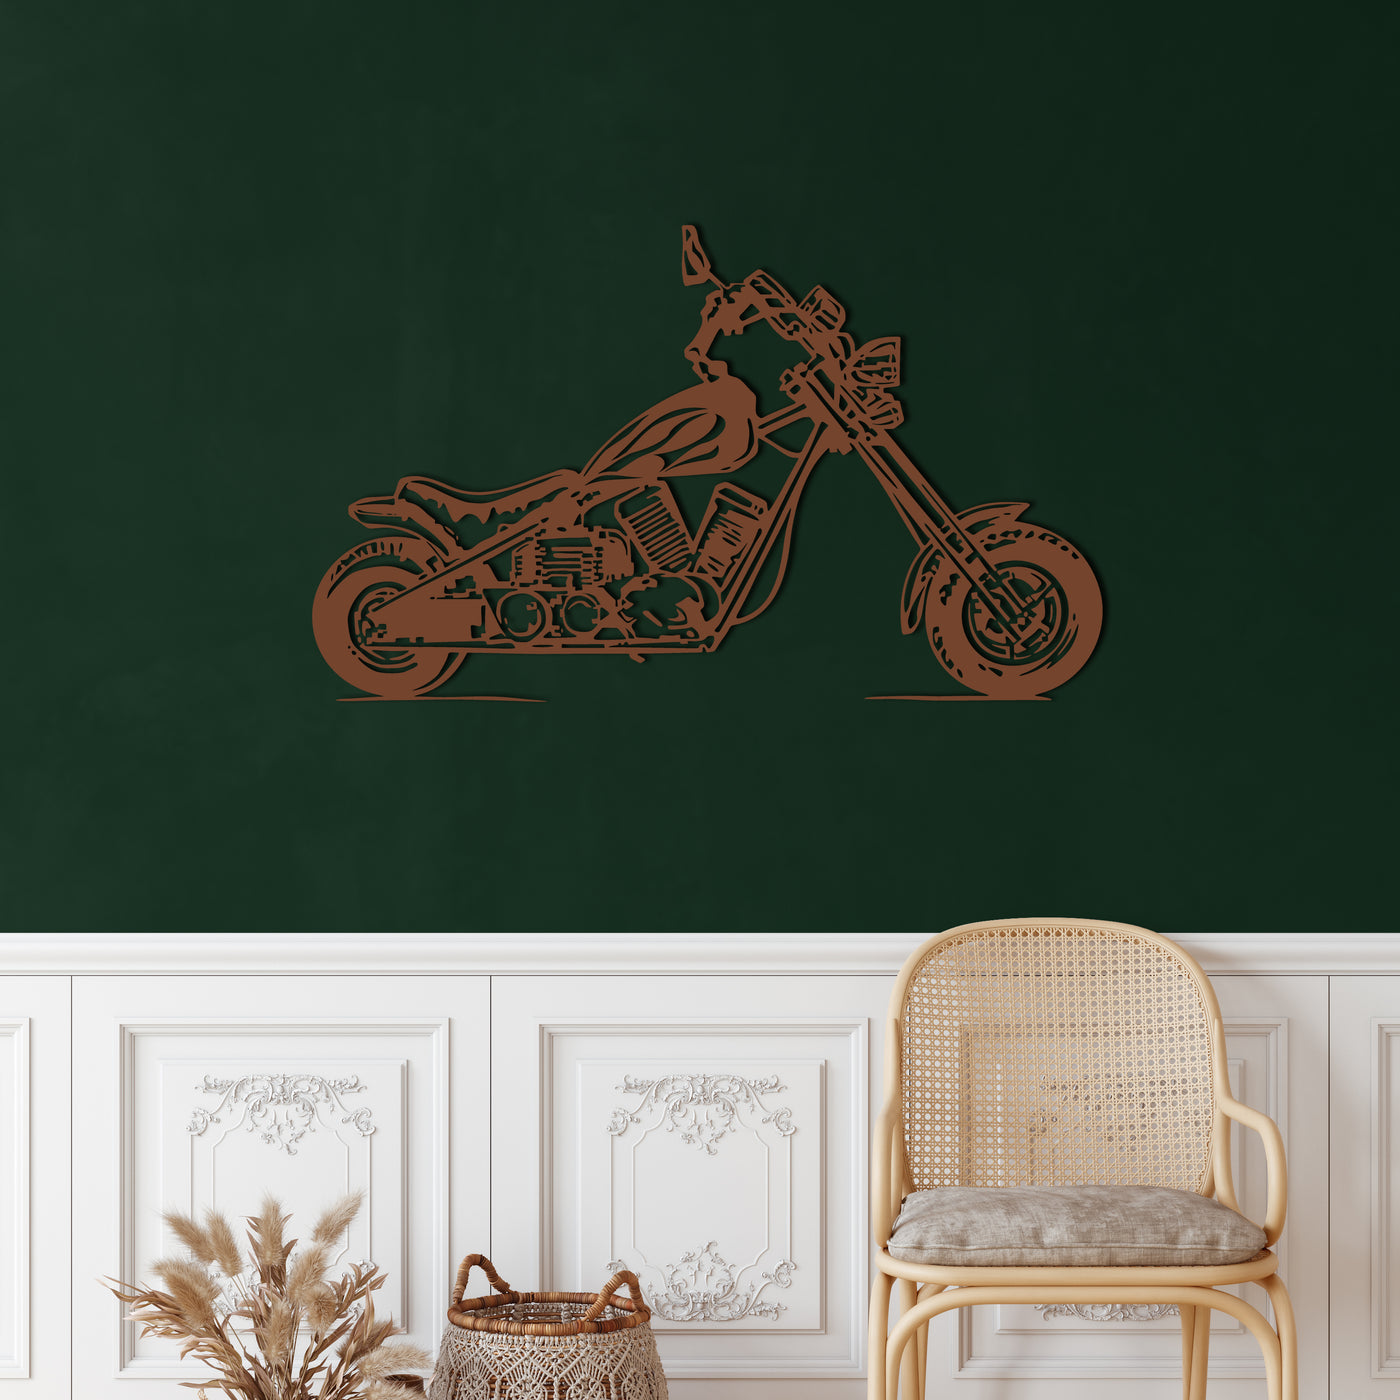 Motorrad Metall Wandkunst